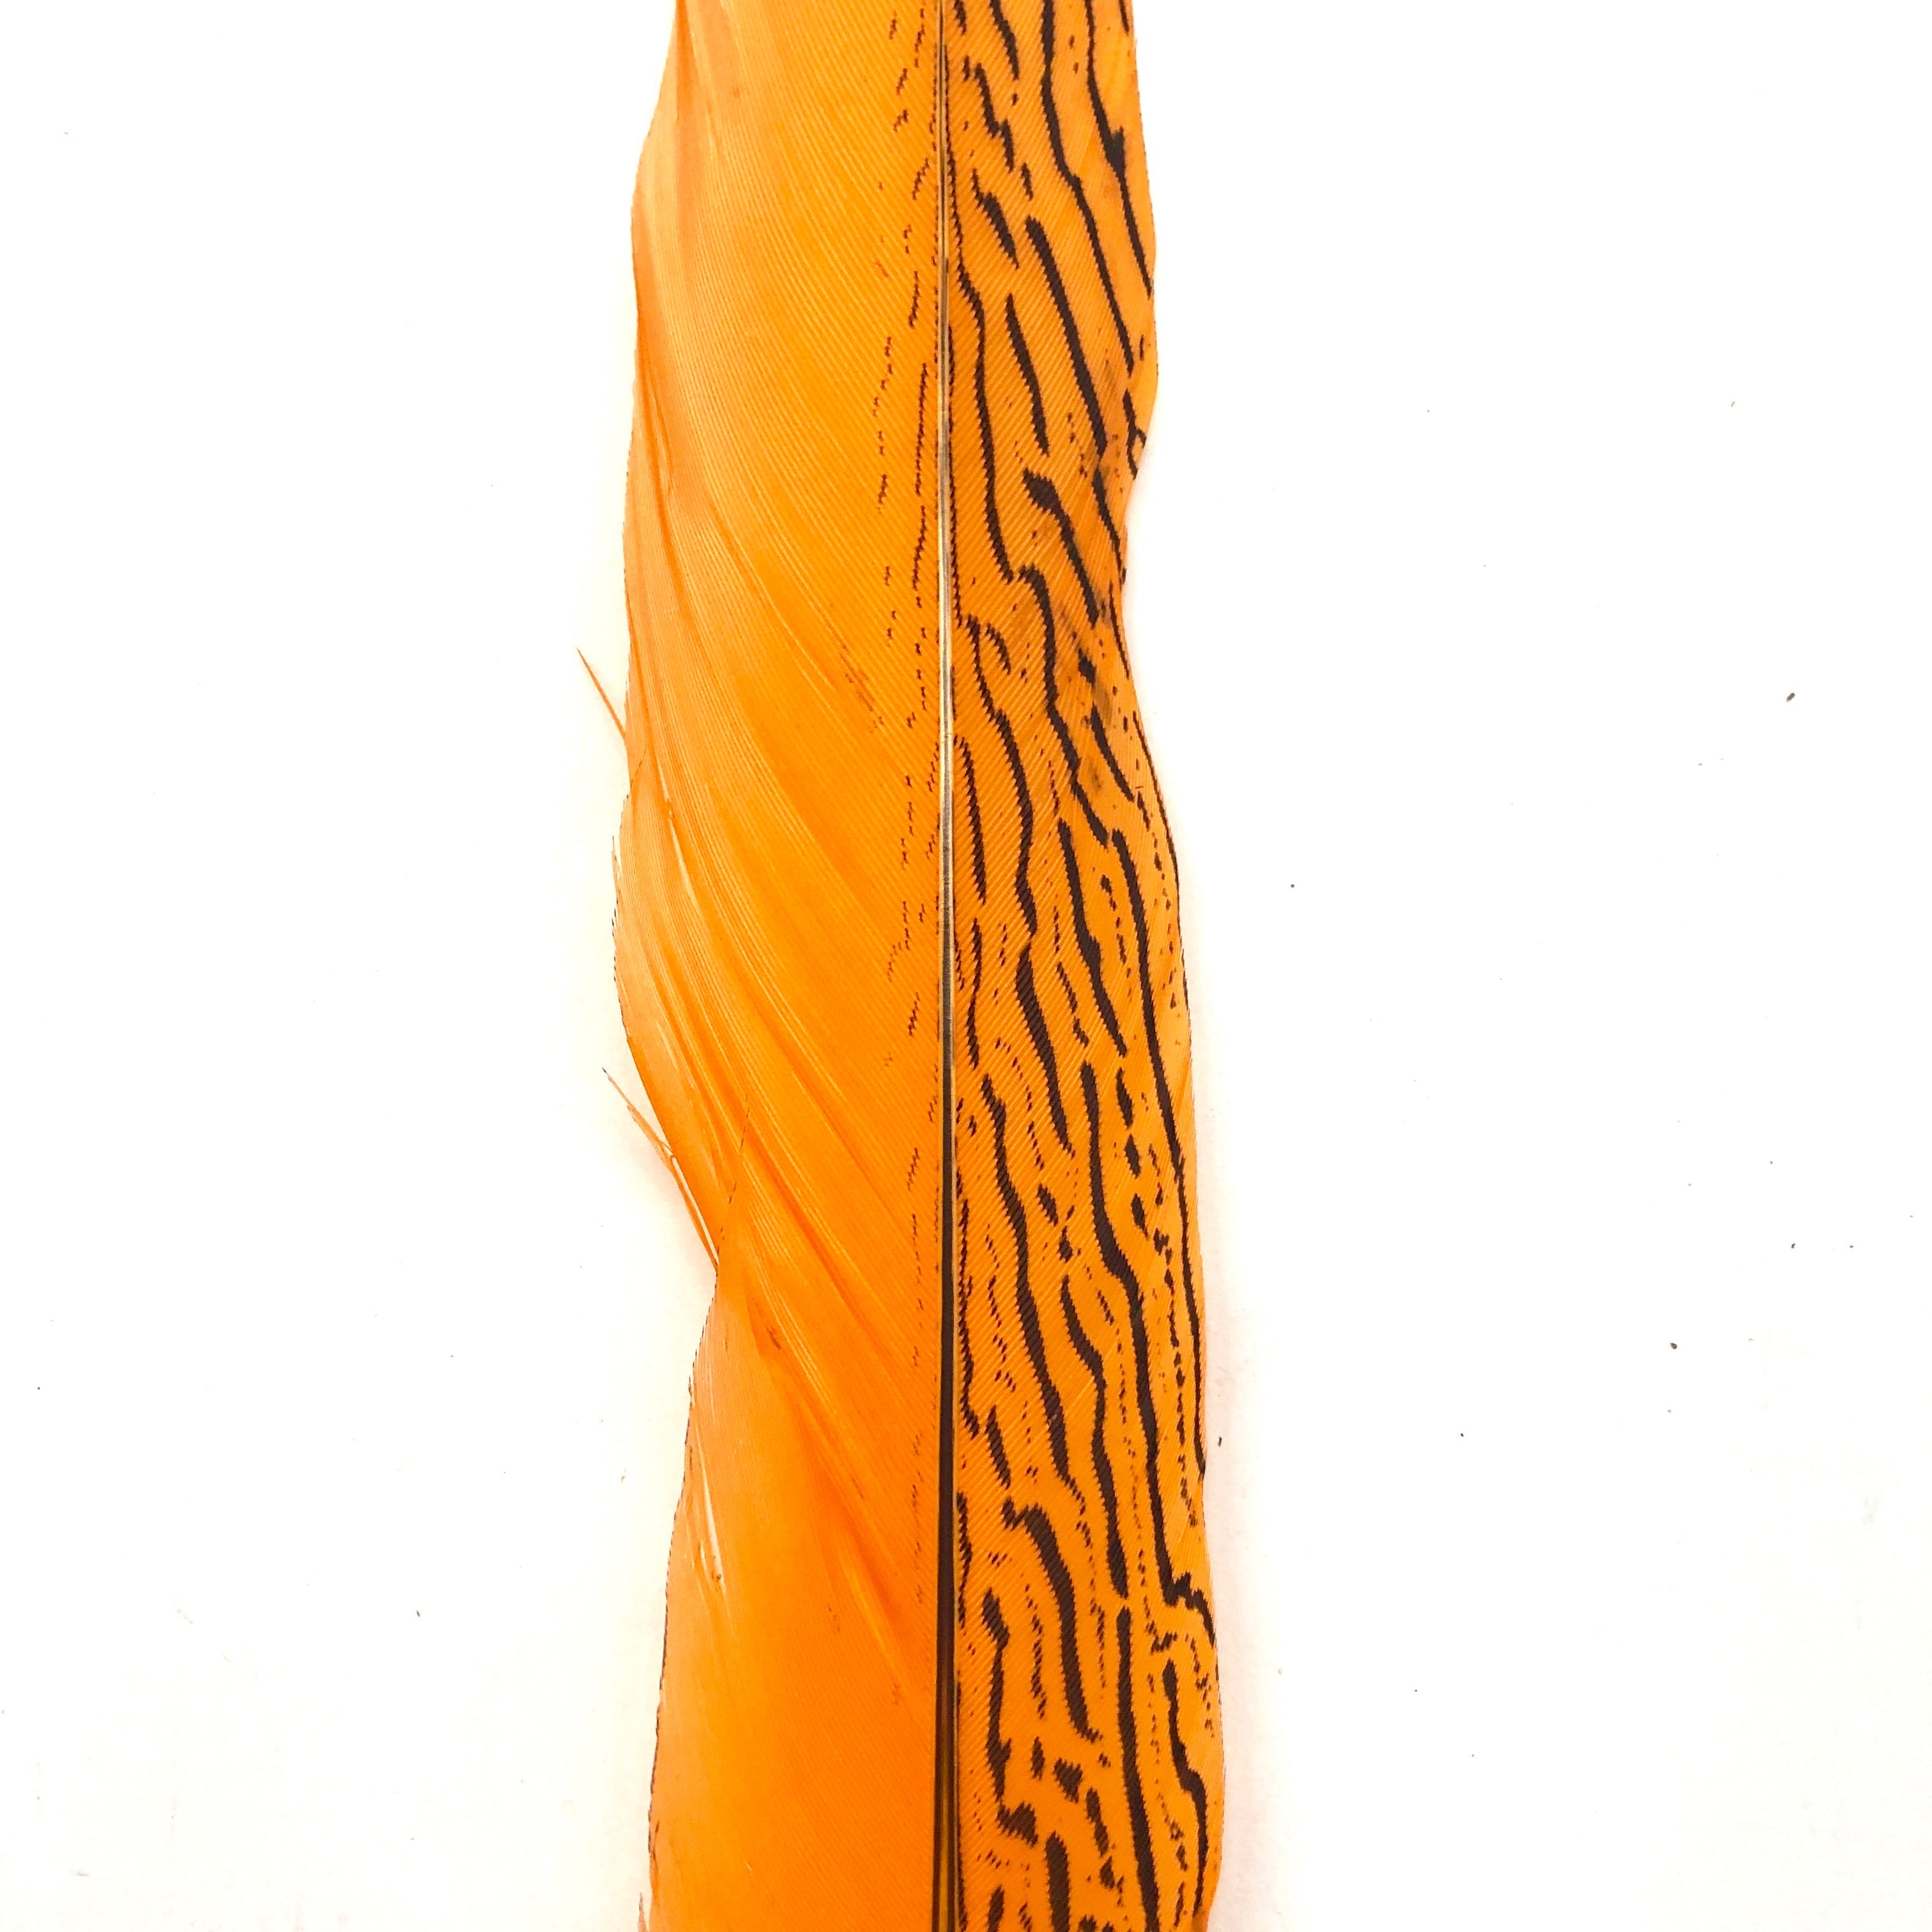 10" to 20" Silver Pheasant Tail Feather - Dark Orange